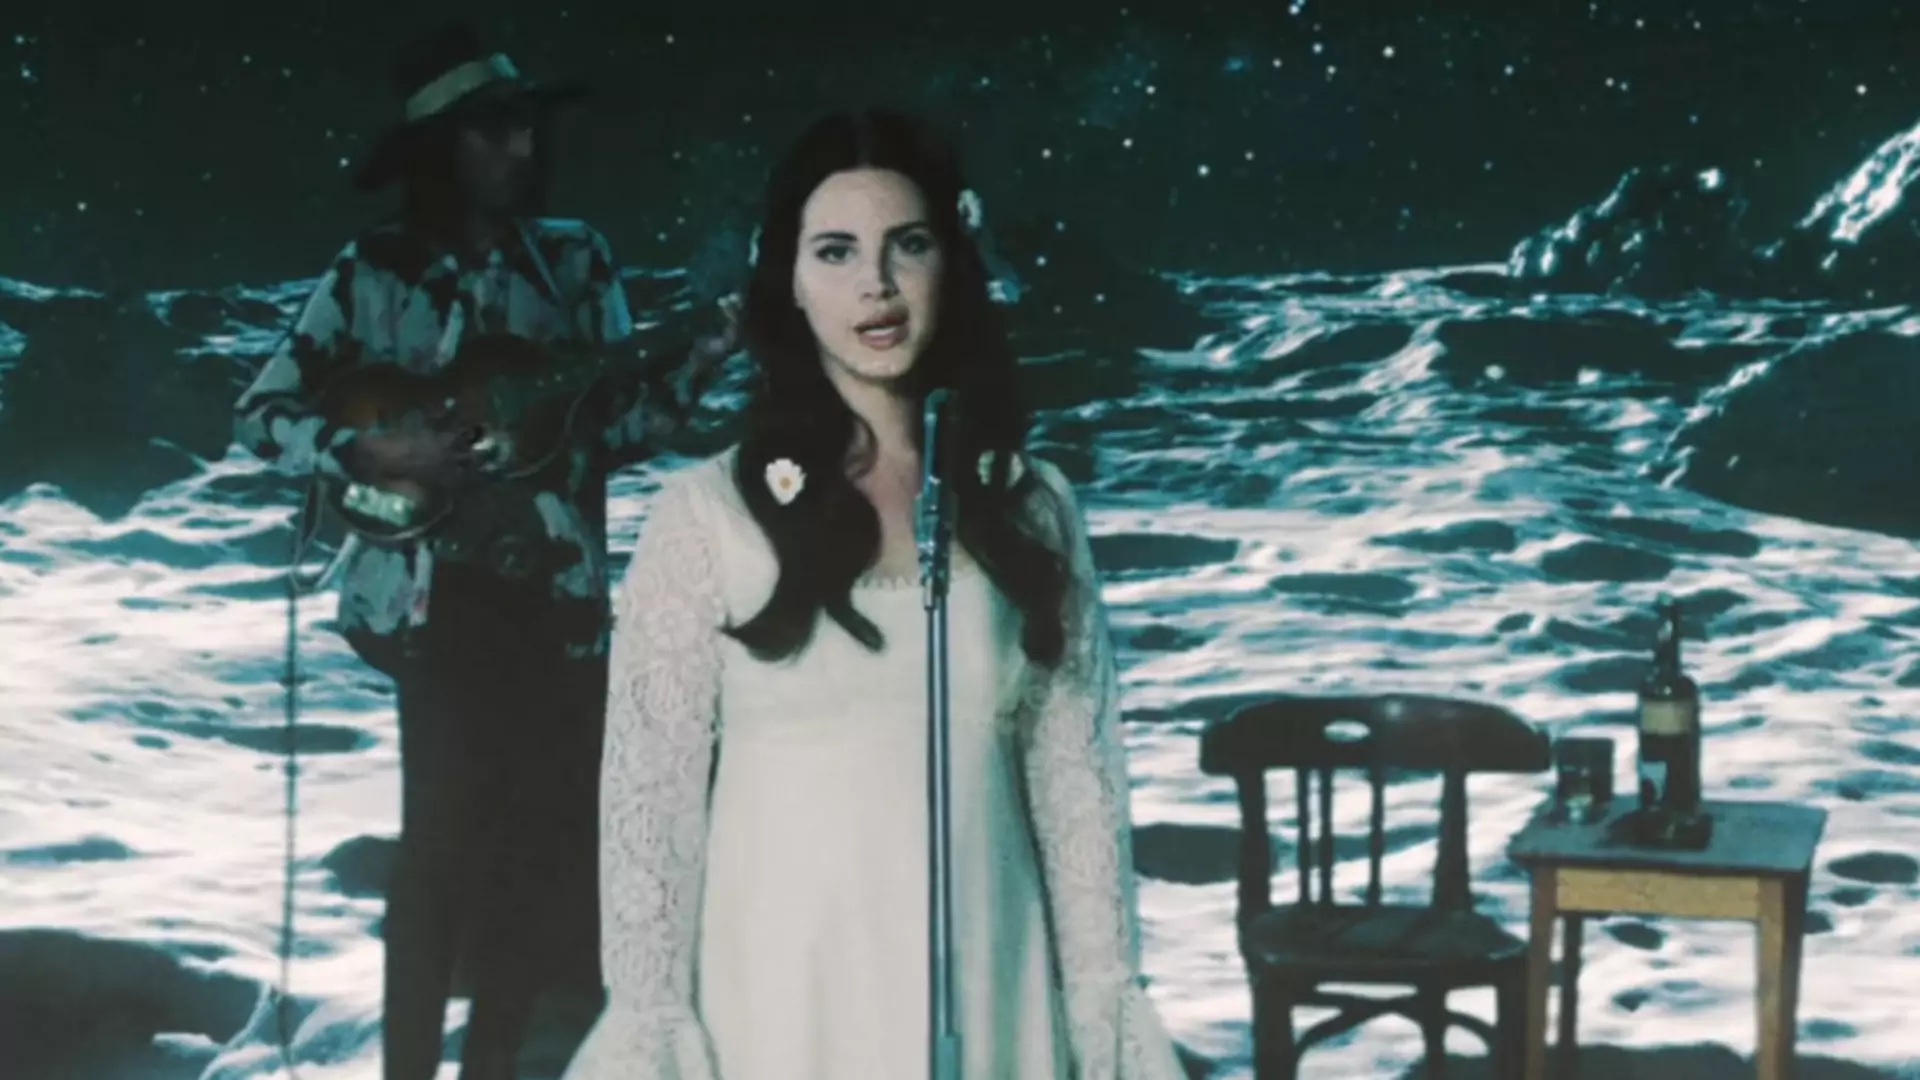 Lana Del Rey powraca w swoim stylu. Zobacz teledysk do piosenki "Love"